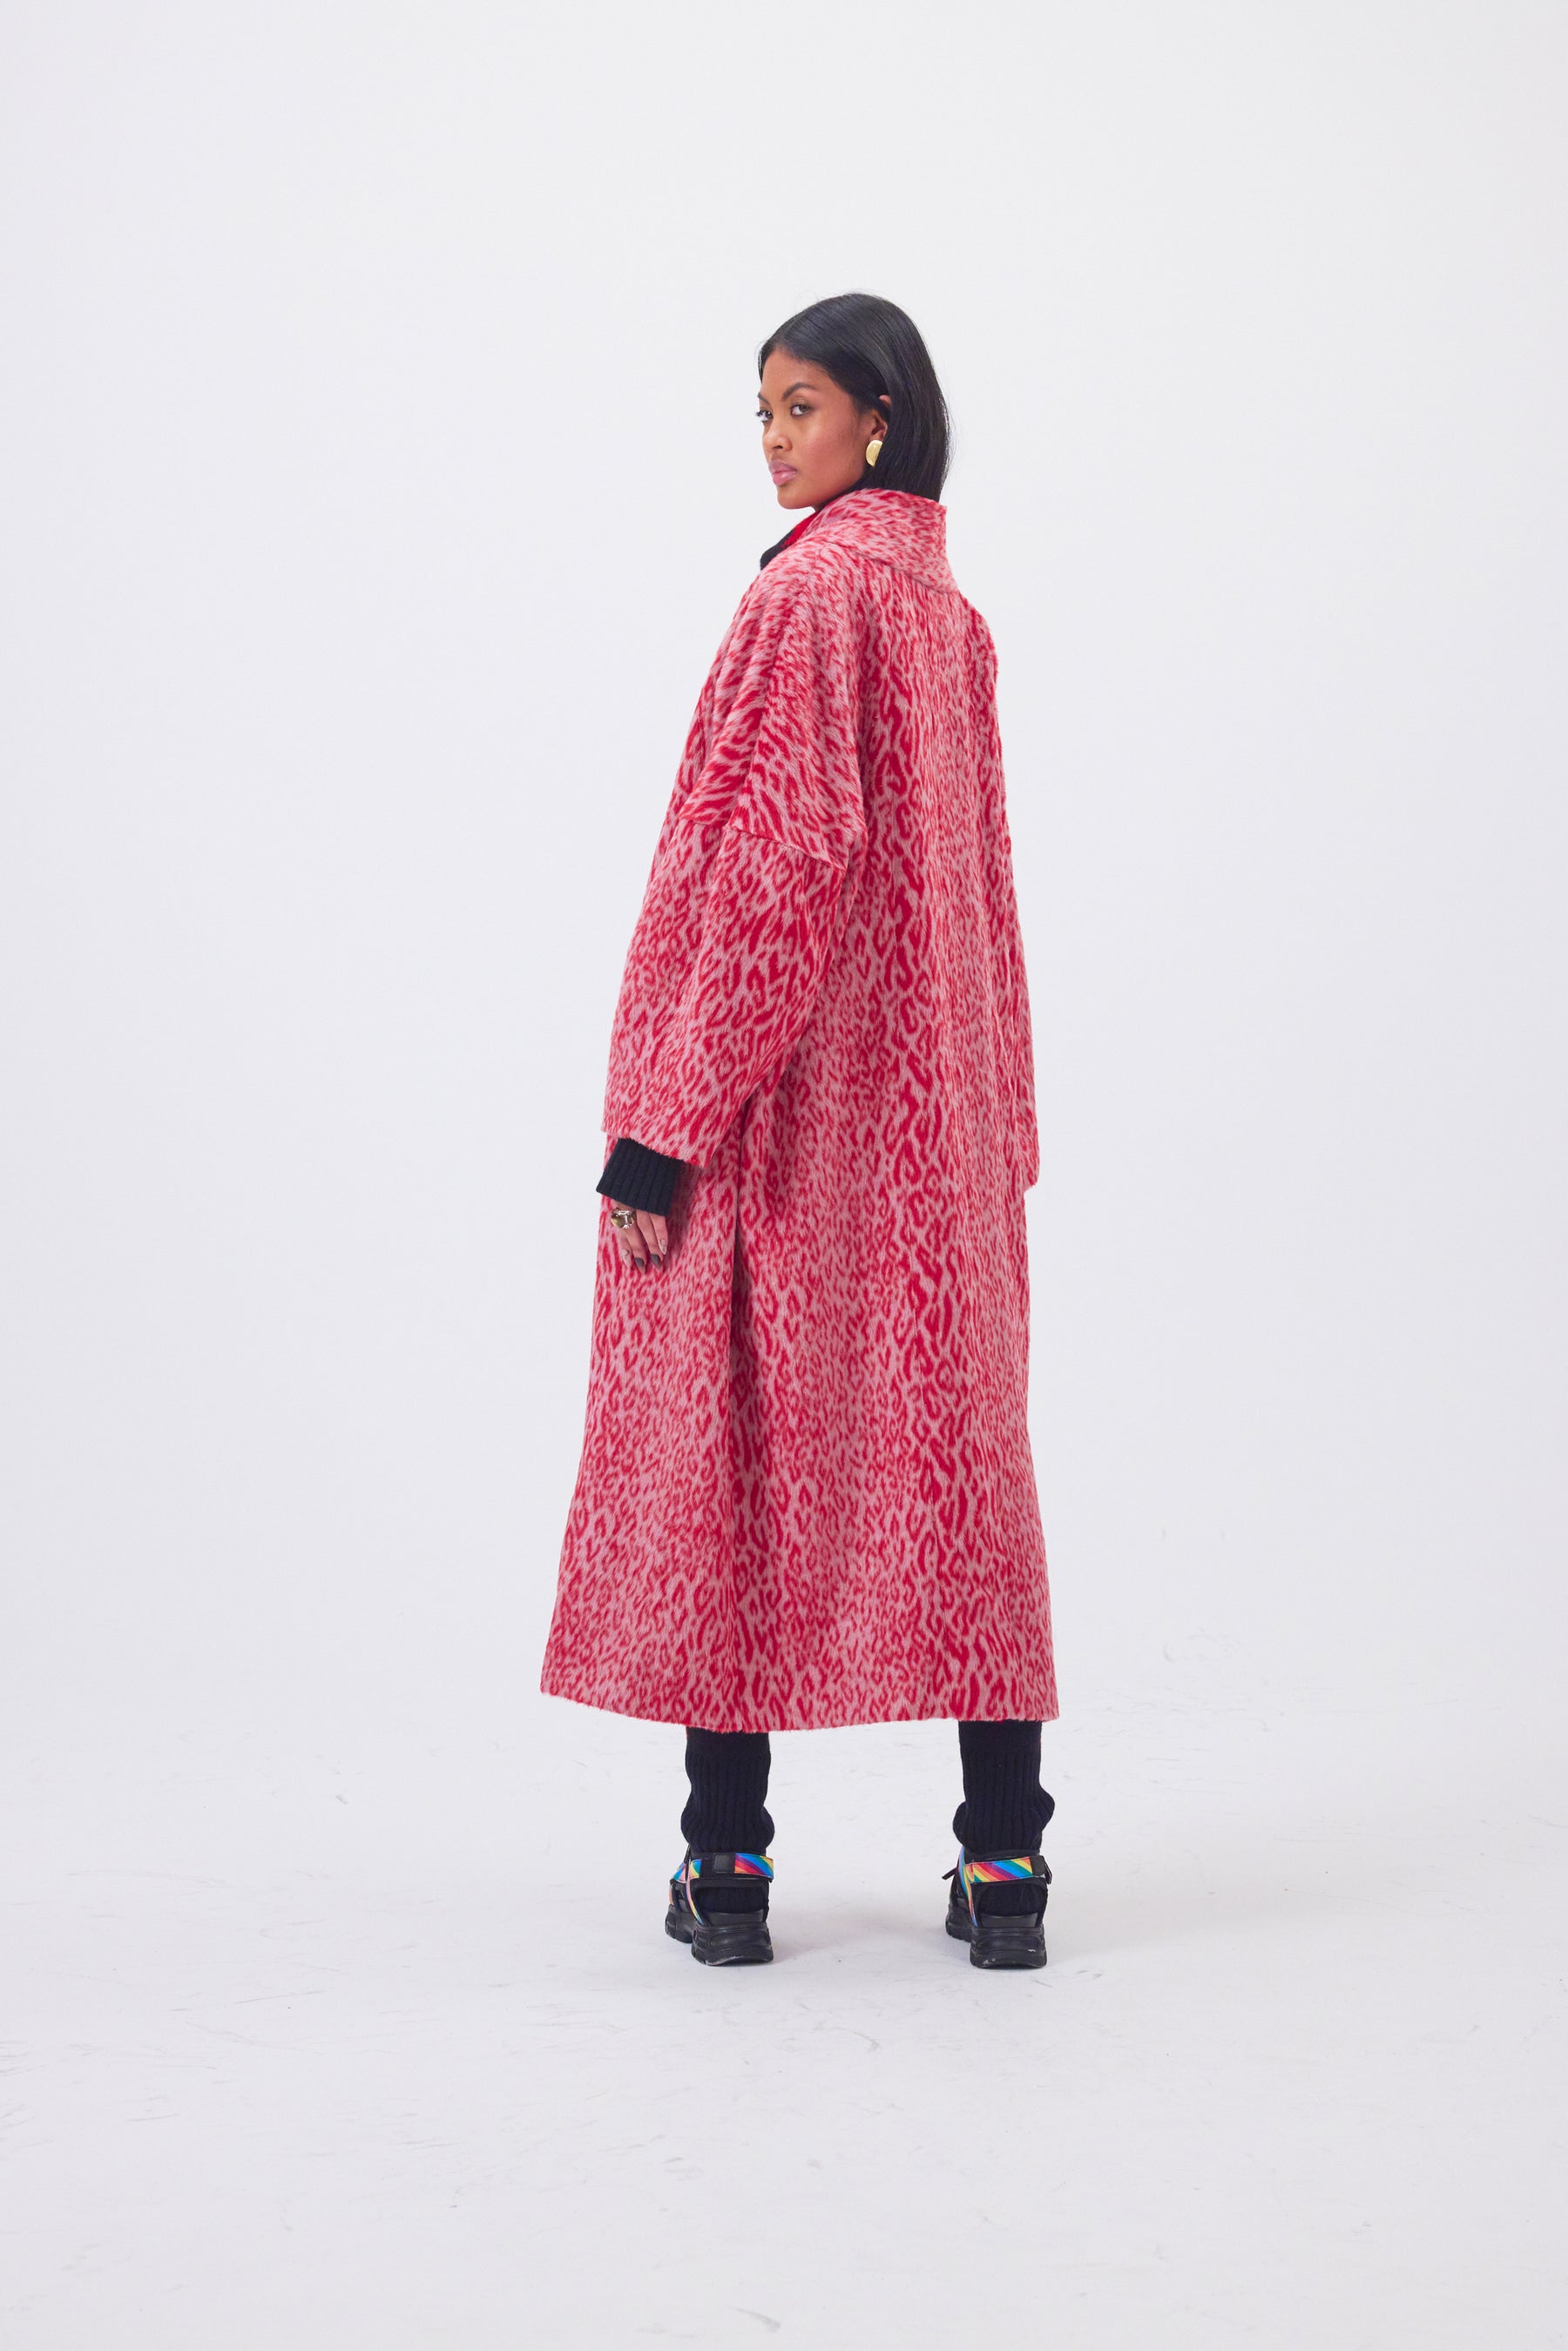 Eren coat in red Opera leopard woolen print